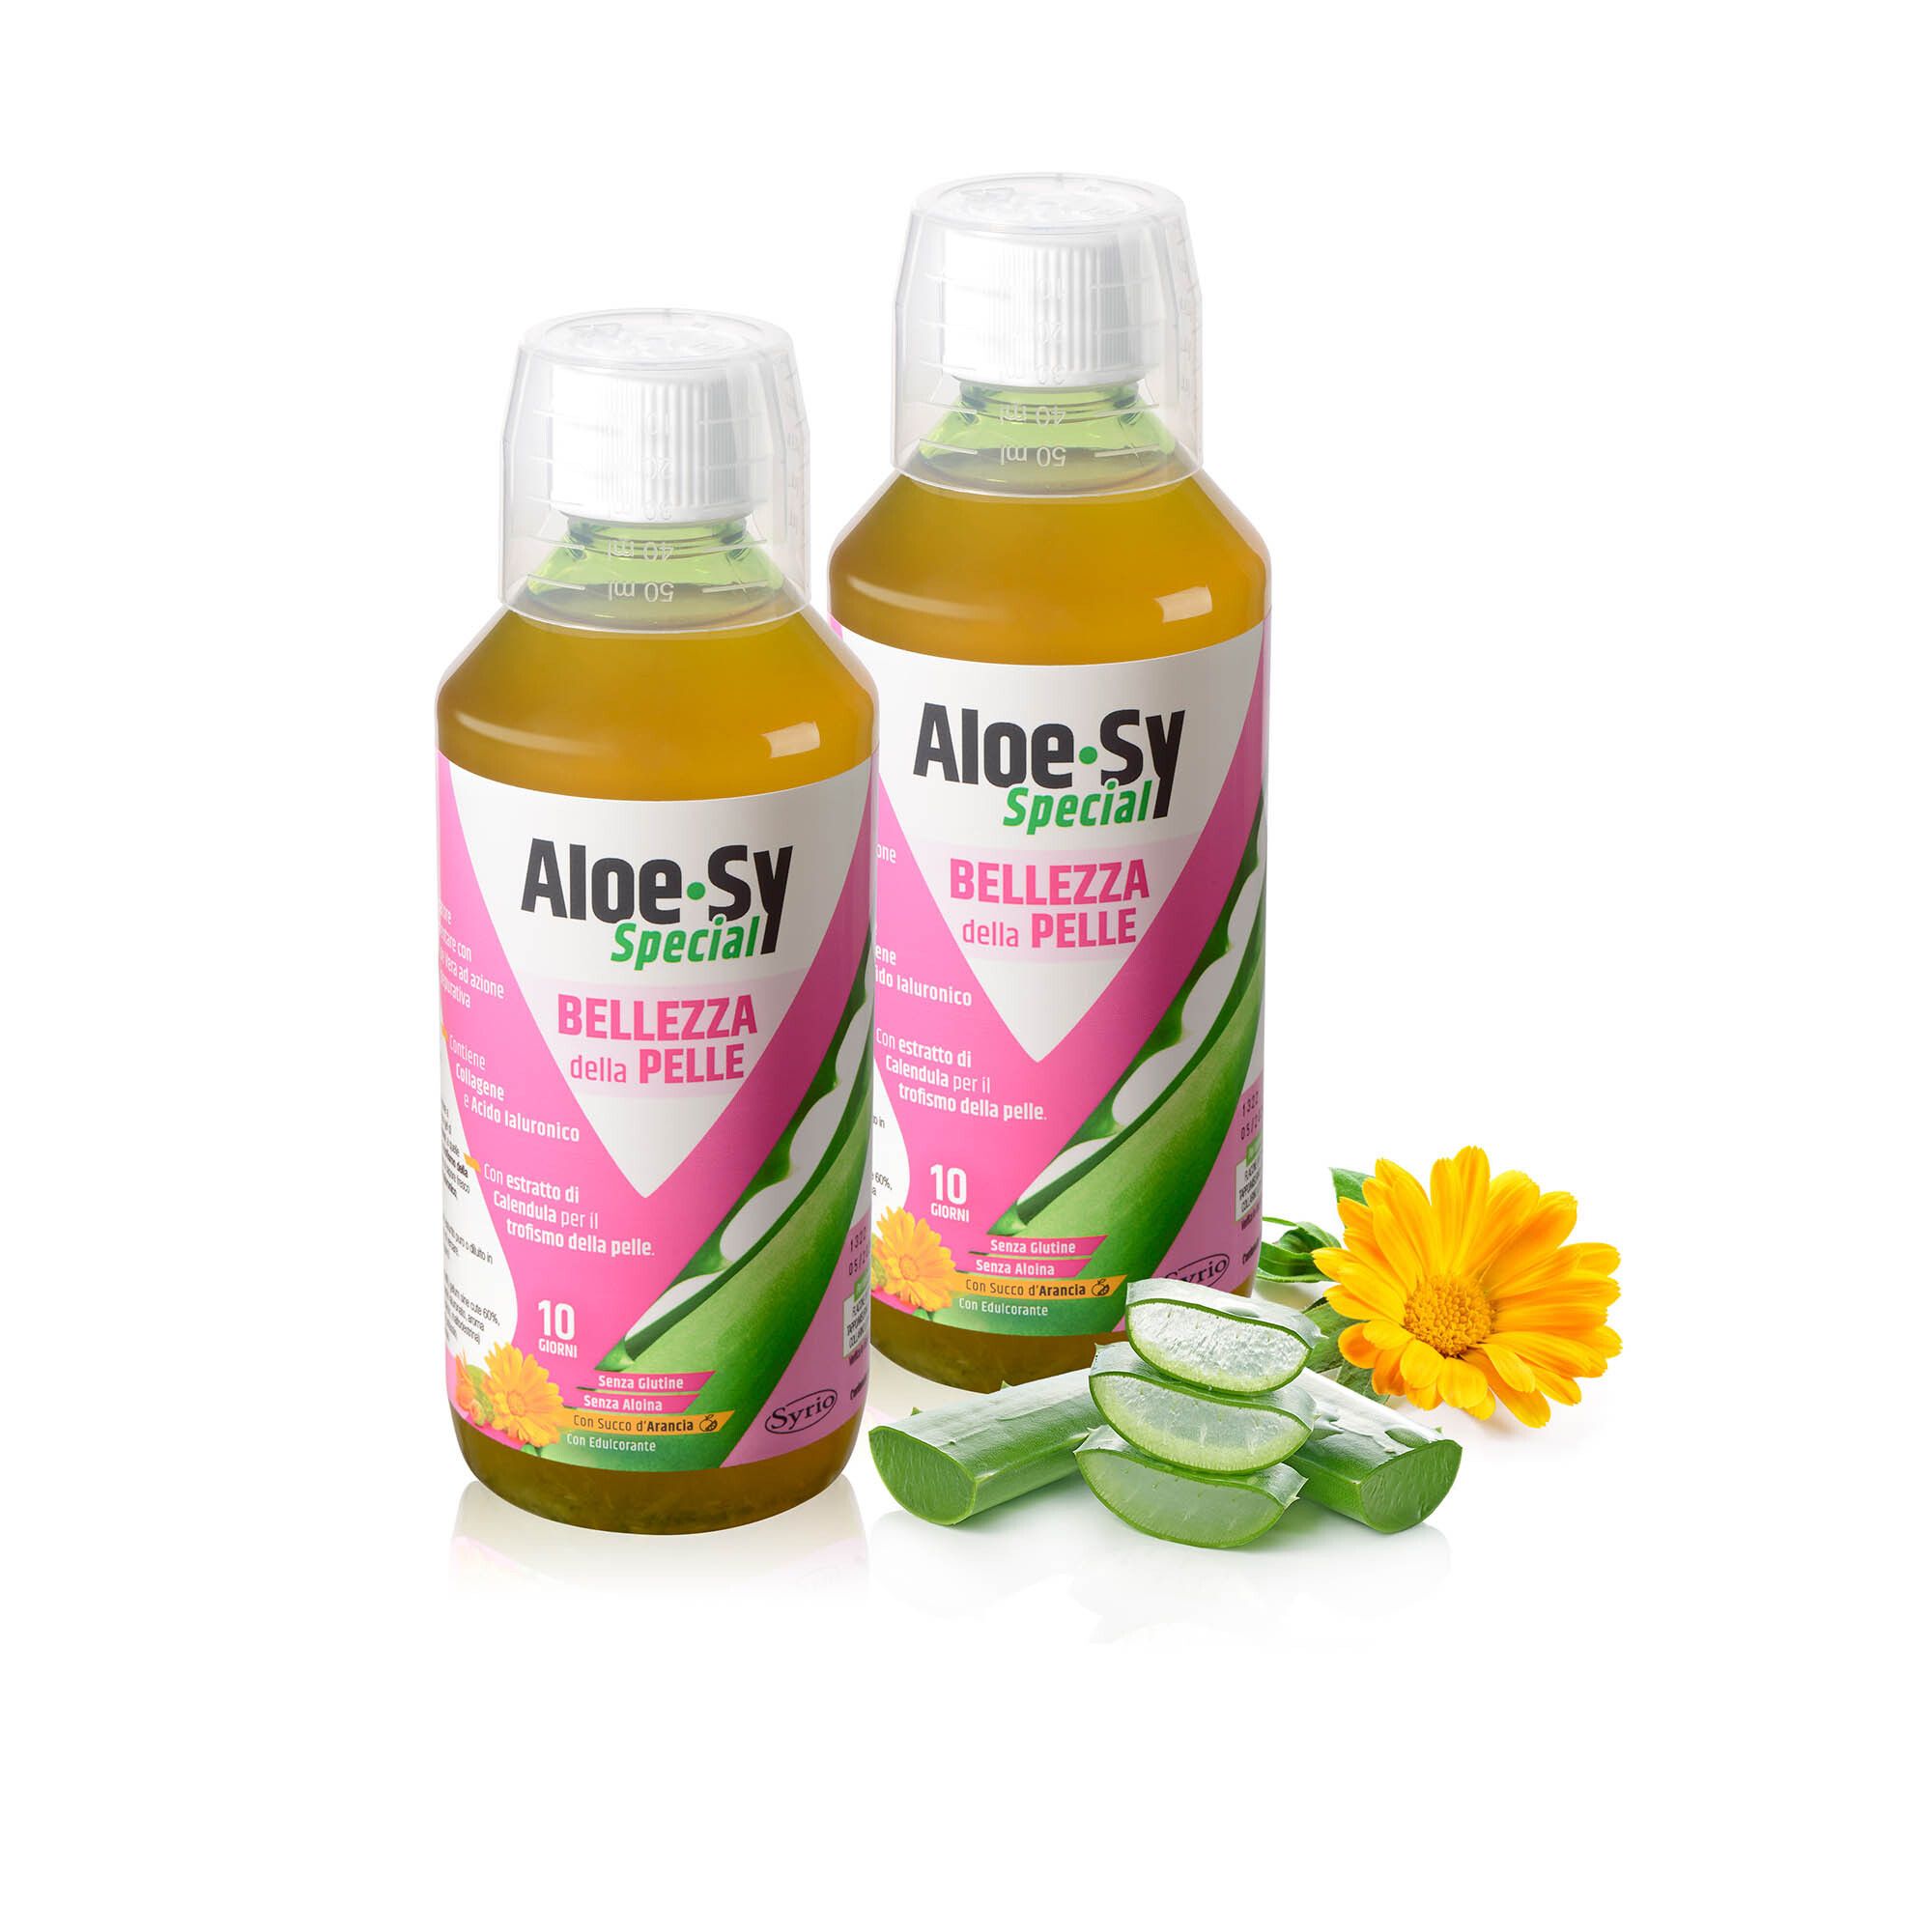 Image of Aloe-Sy Special Bellezza della pelle, integratore (2 pz)